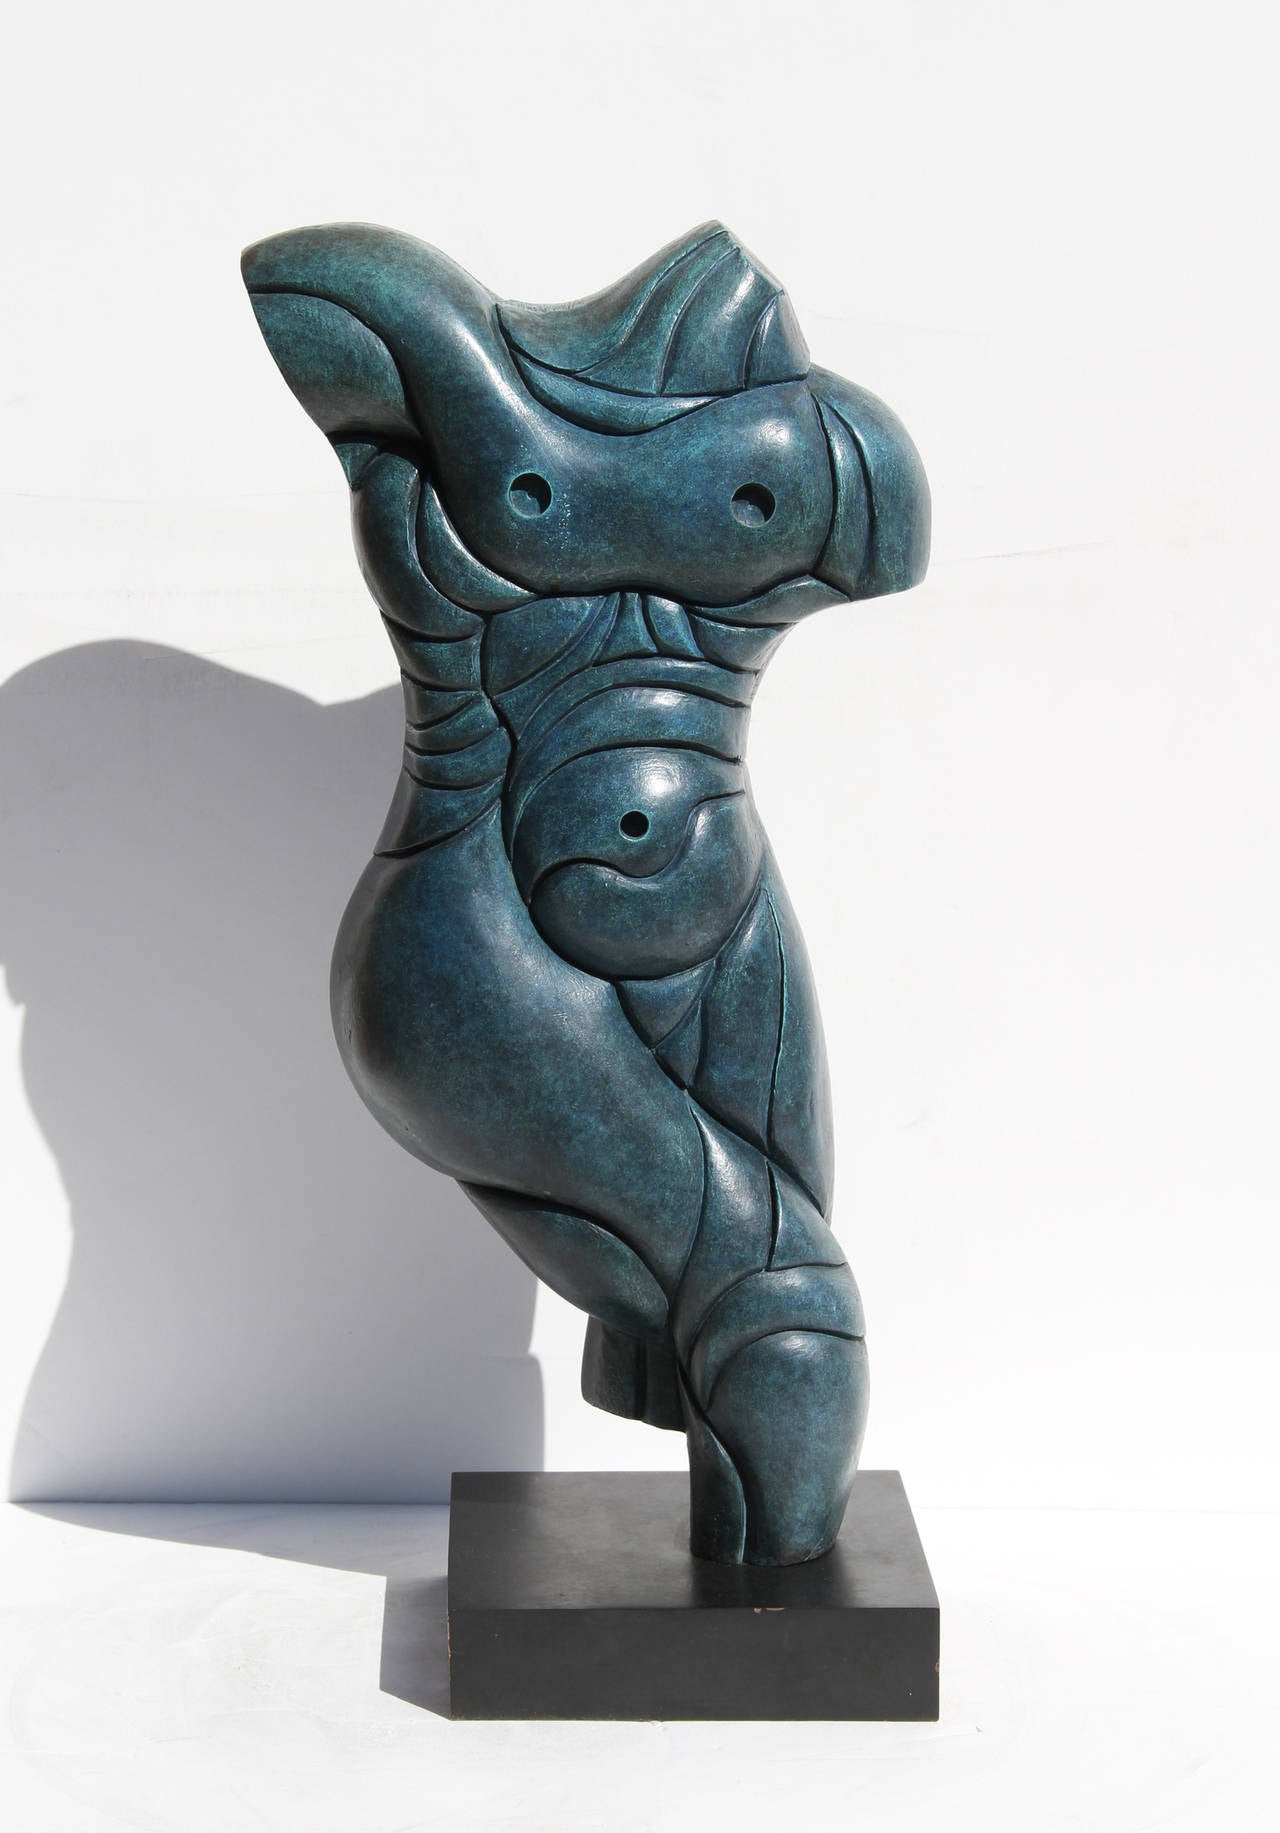 Artistics : Anthony Quinn, Américain (1915 - 2001)
Titre : Zeus
Année : 1992
Moyen : Sculpture en bronze avec patine, signature, date et numéro inscrits
Edition : 8/8
Dimensions : 55,88 cm x 22,86 cm x 12,7 cm (22 in. x 9 in. x 5 in.)
Base : 2